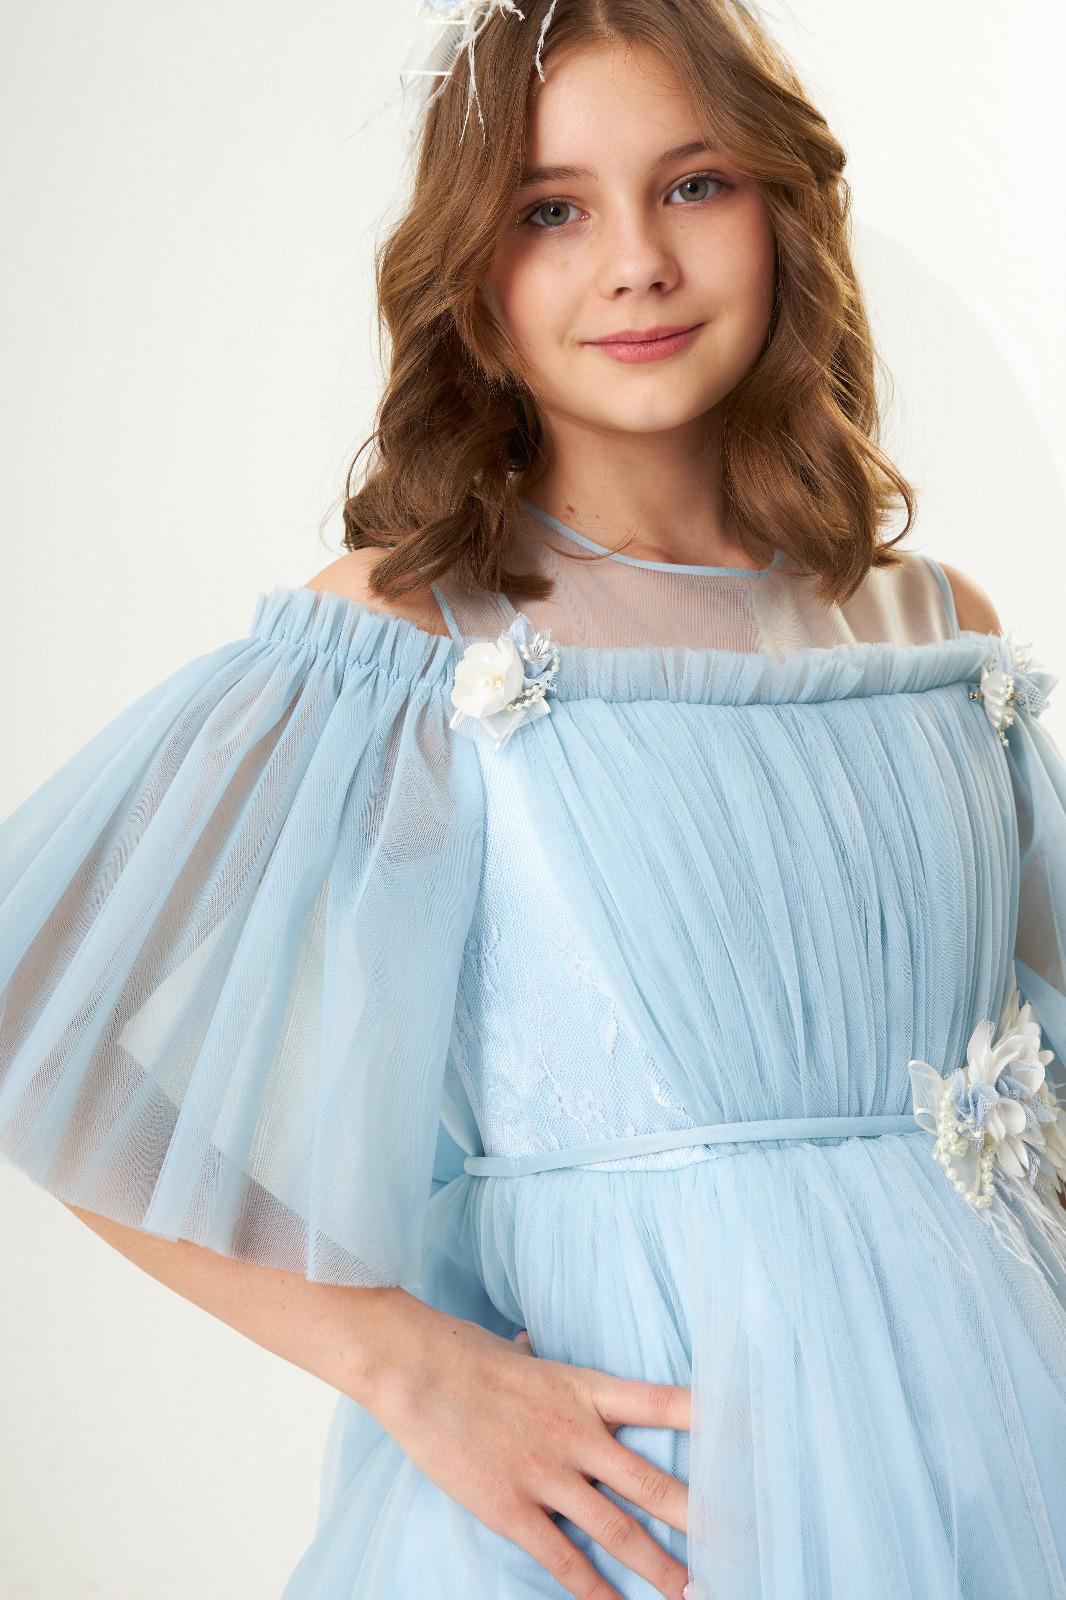 Lovely Elegant Tiffany Dress 2308